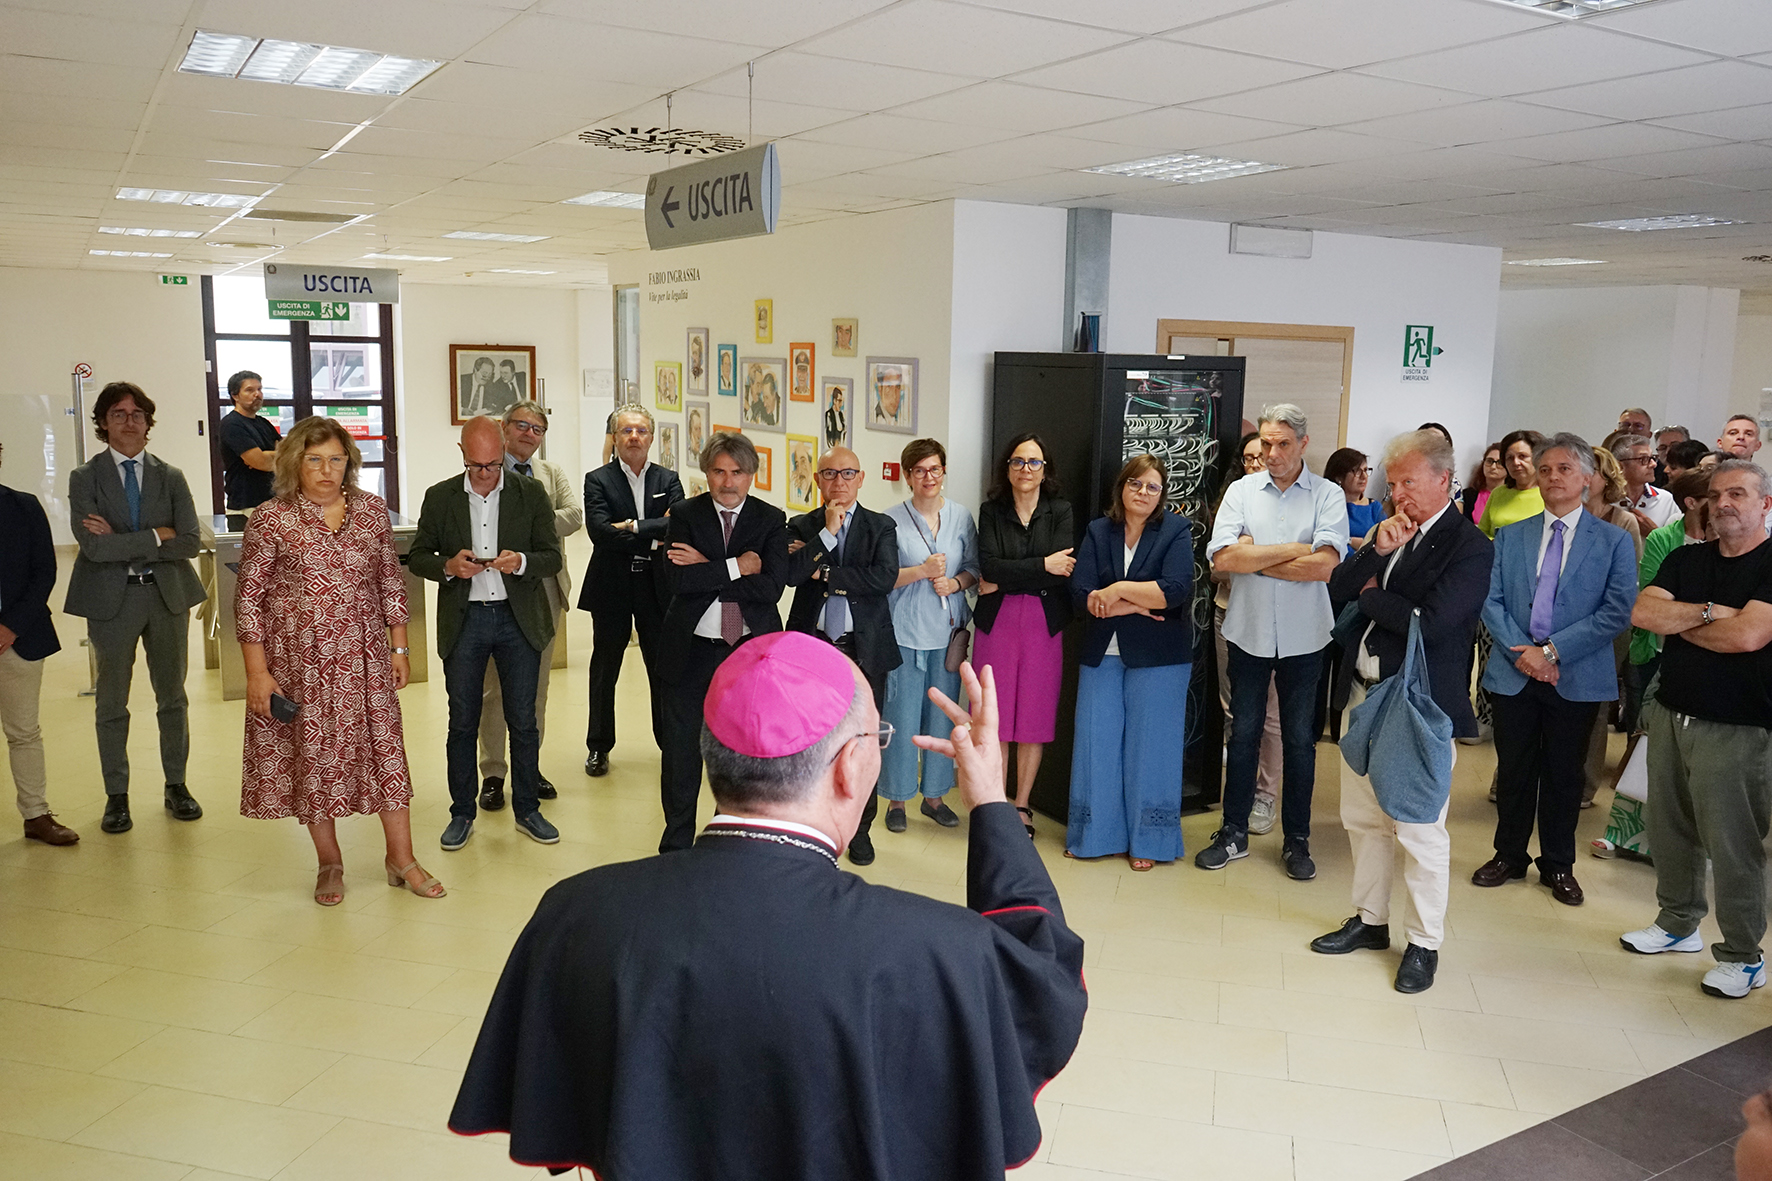 Il Vescovo Giurdanella in visita al Tribunale di Marsala: “Qui luogo di rispetto e umanità”